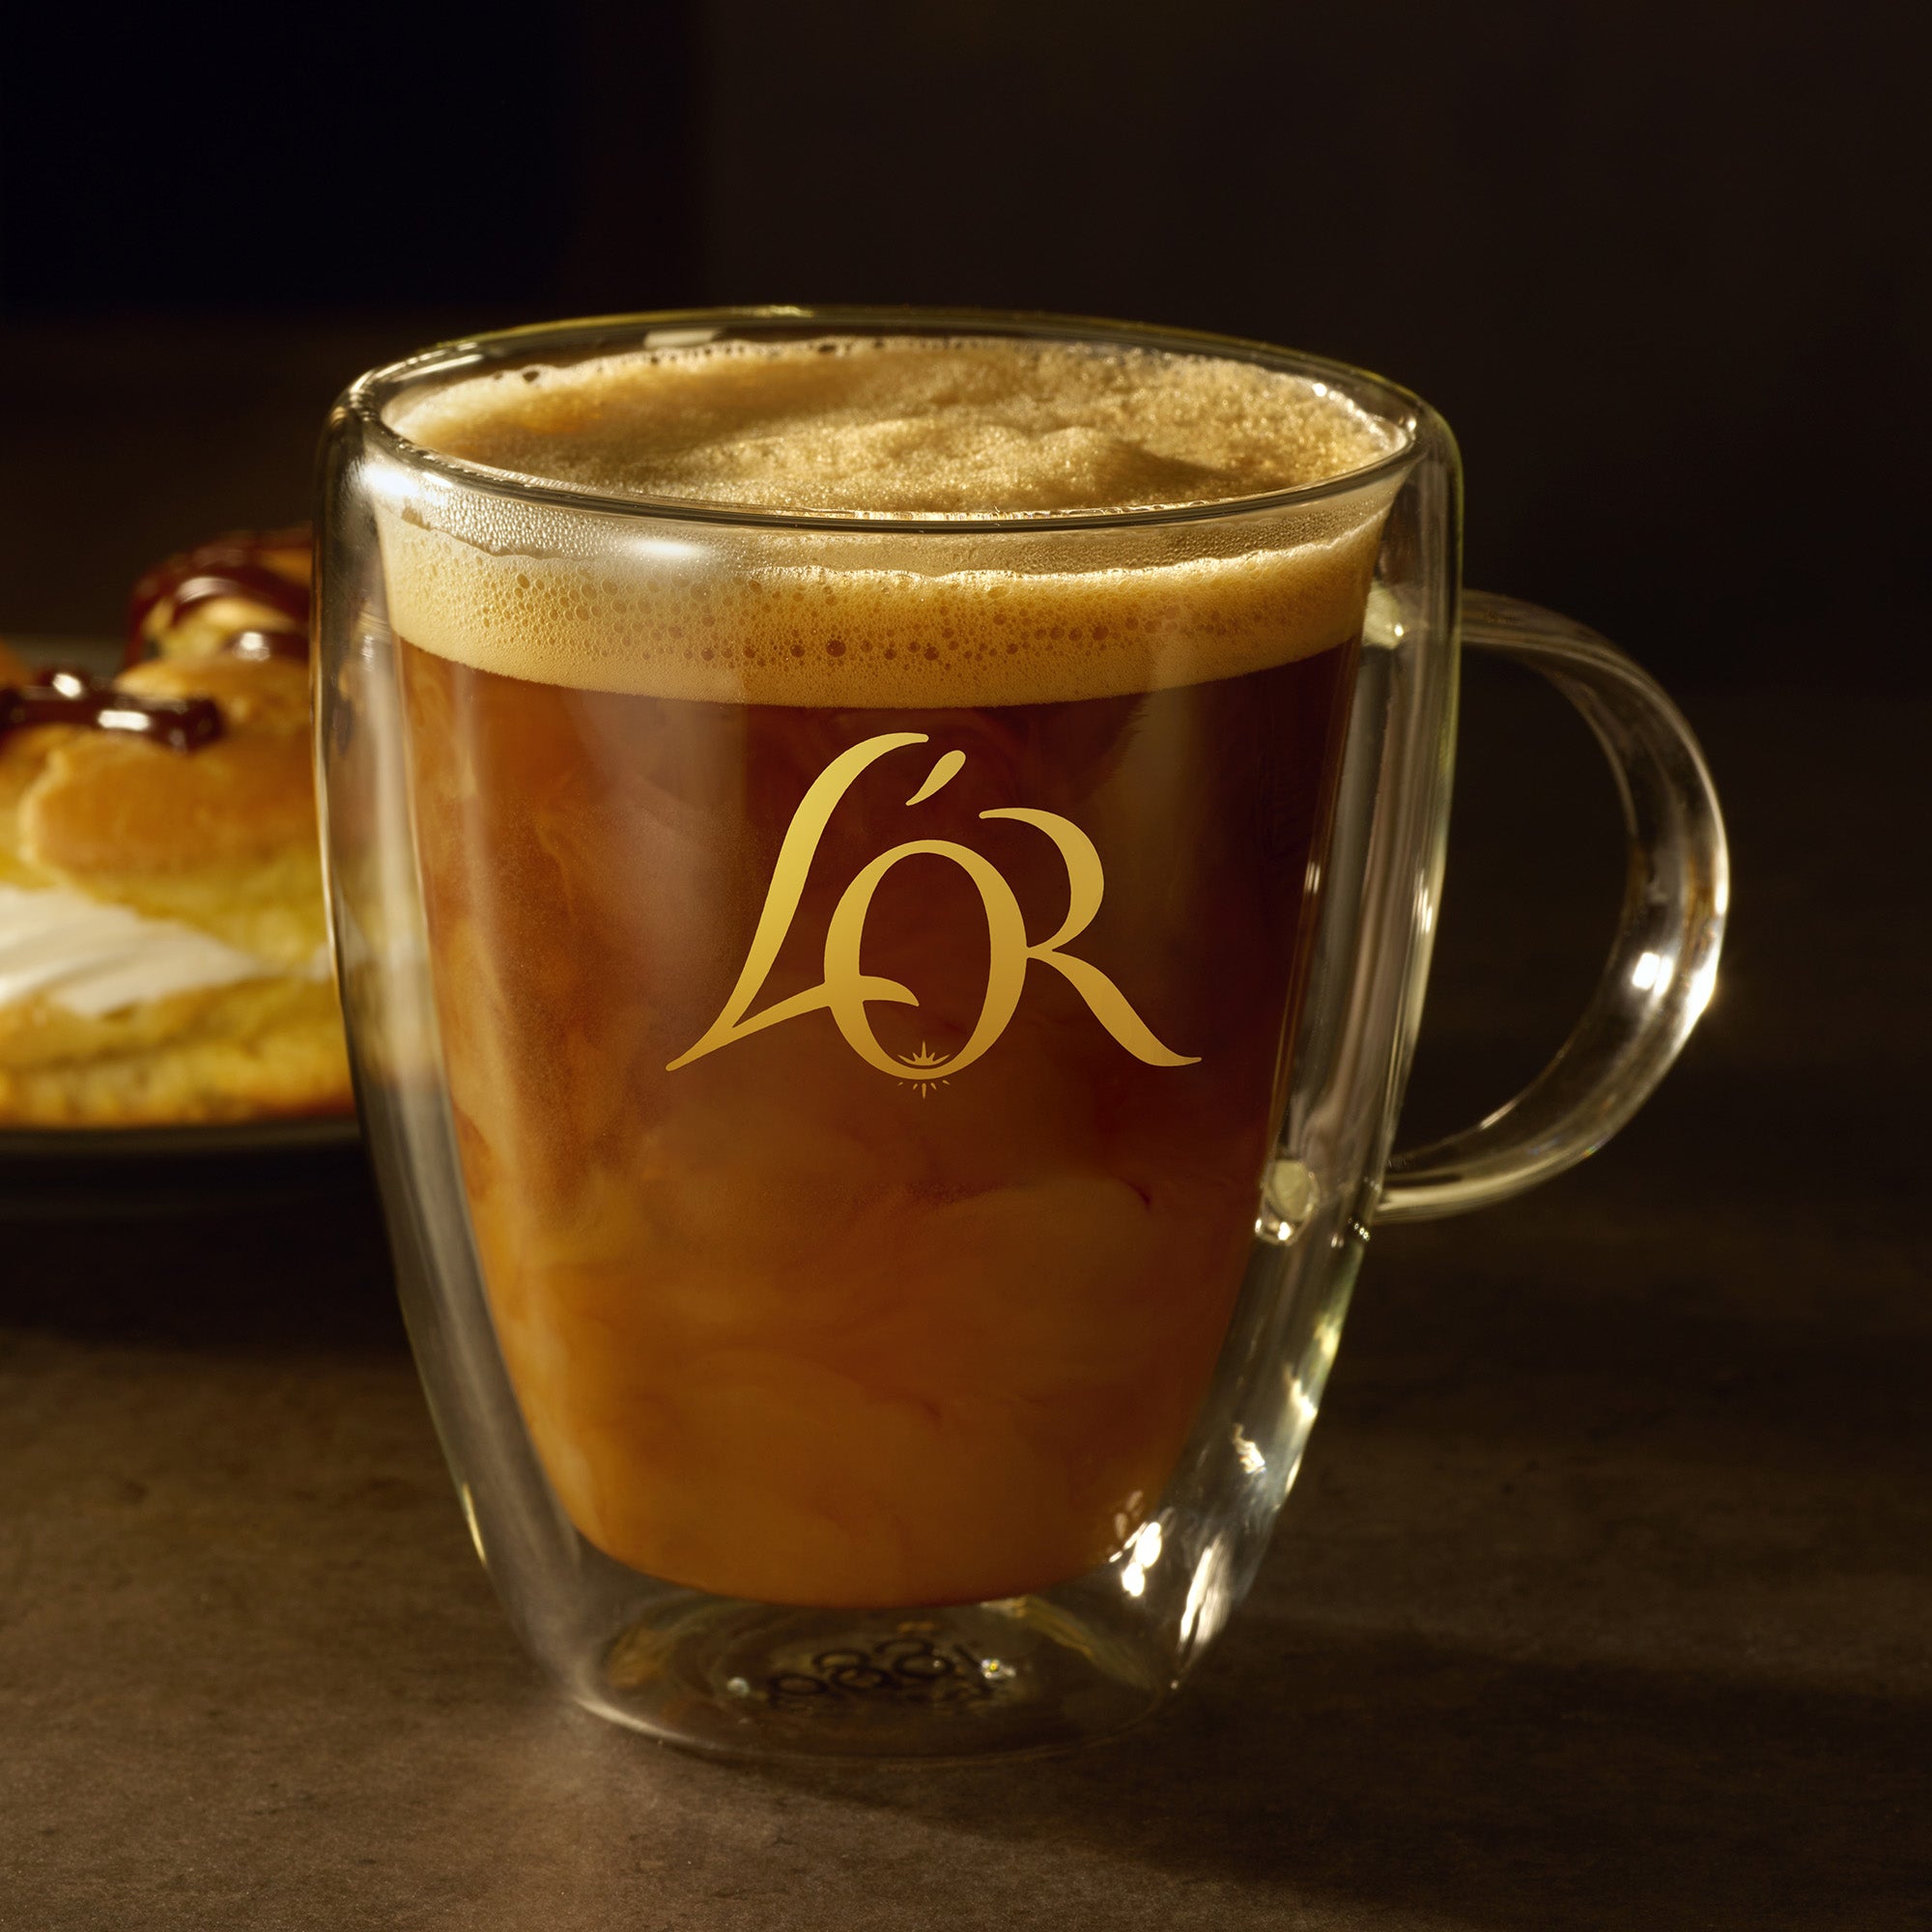 3 oz. Small Espresso Cups Double-Wall Borosilicate Glass Coffee